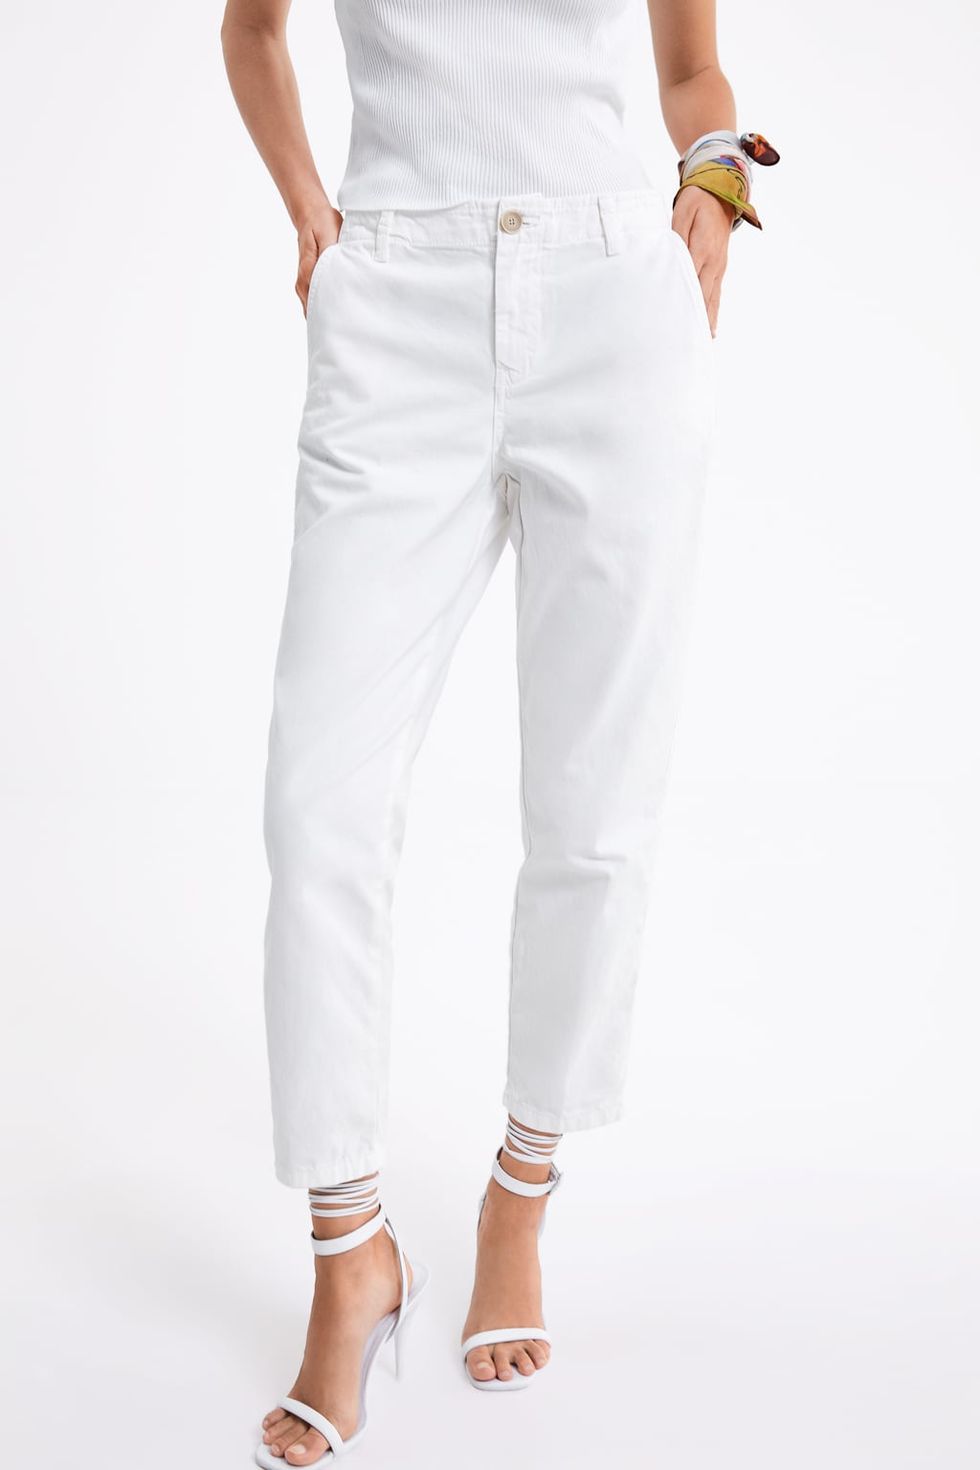 El pantalón blanco Zara 30 € que es mitad vaquero mitad chino y el mundo me pregunta que de es